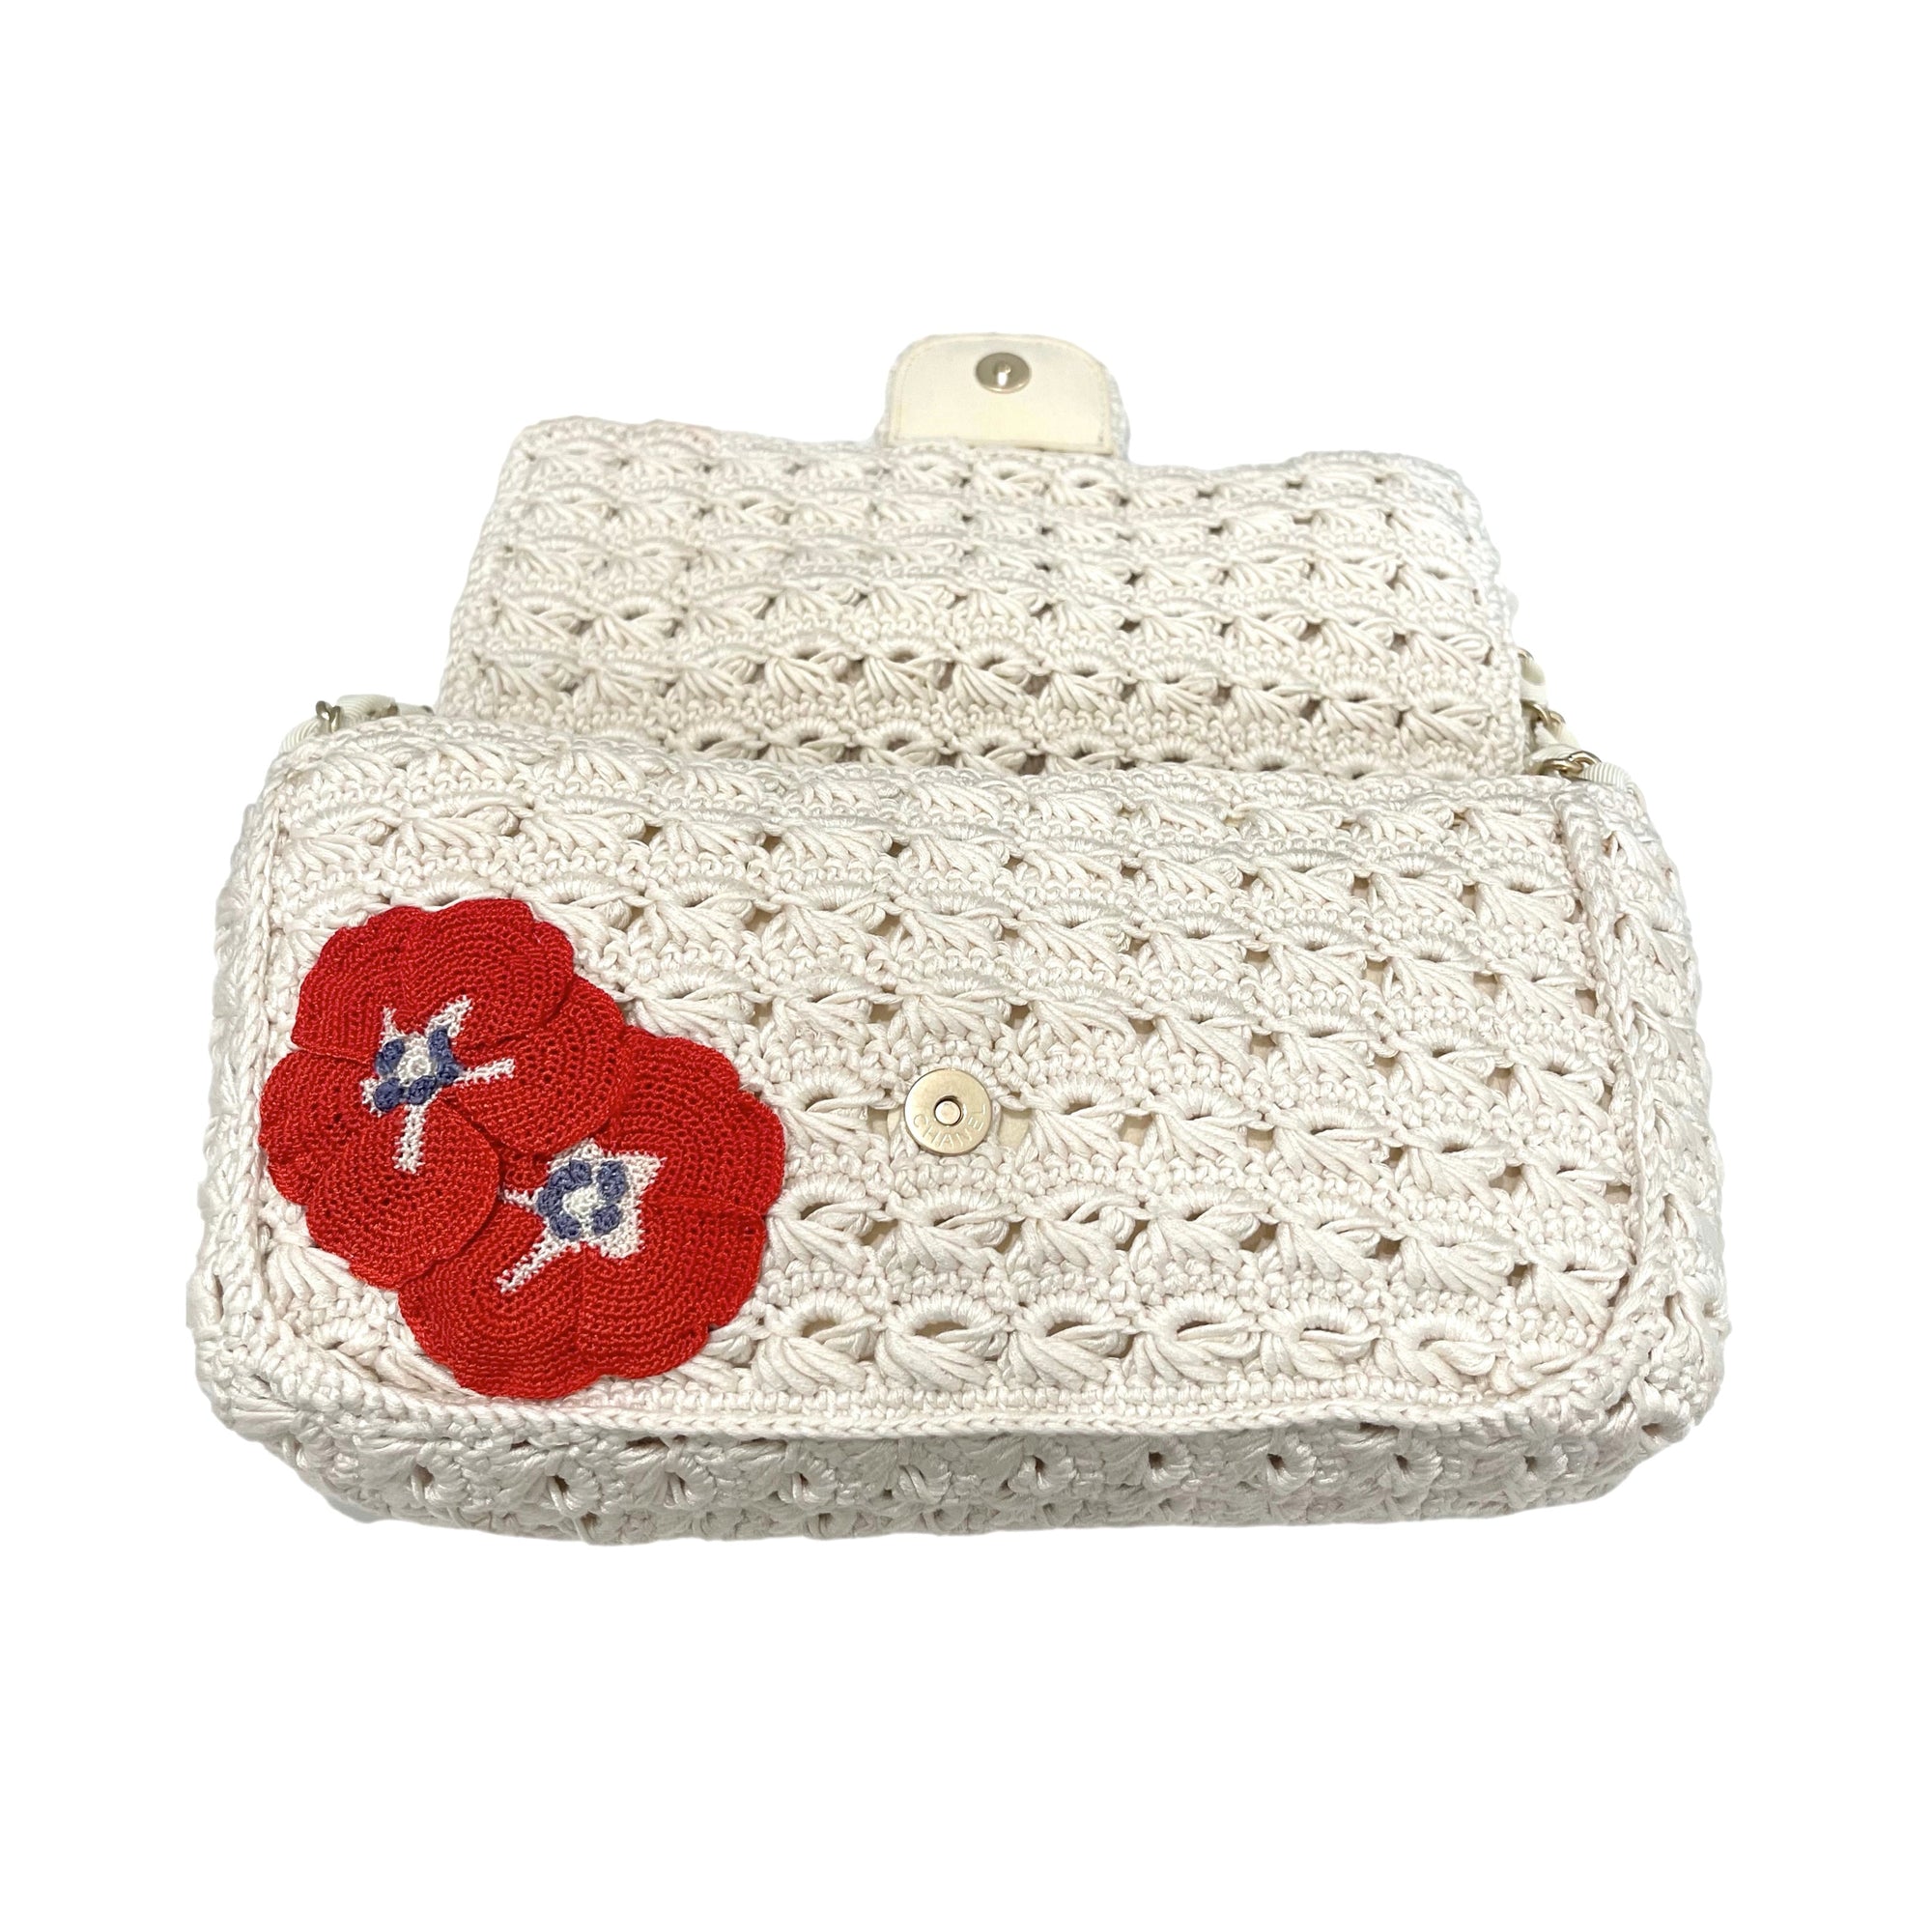 Chanel Crochet Floral Flap Bag